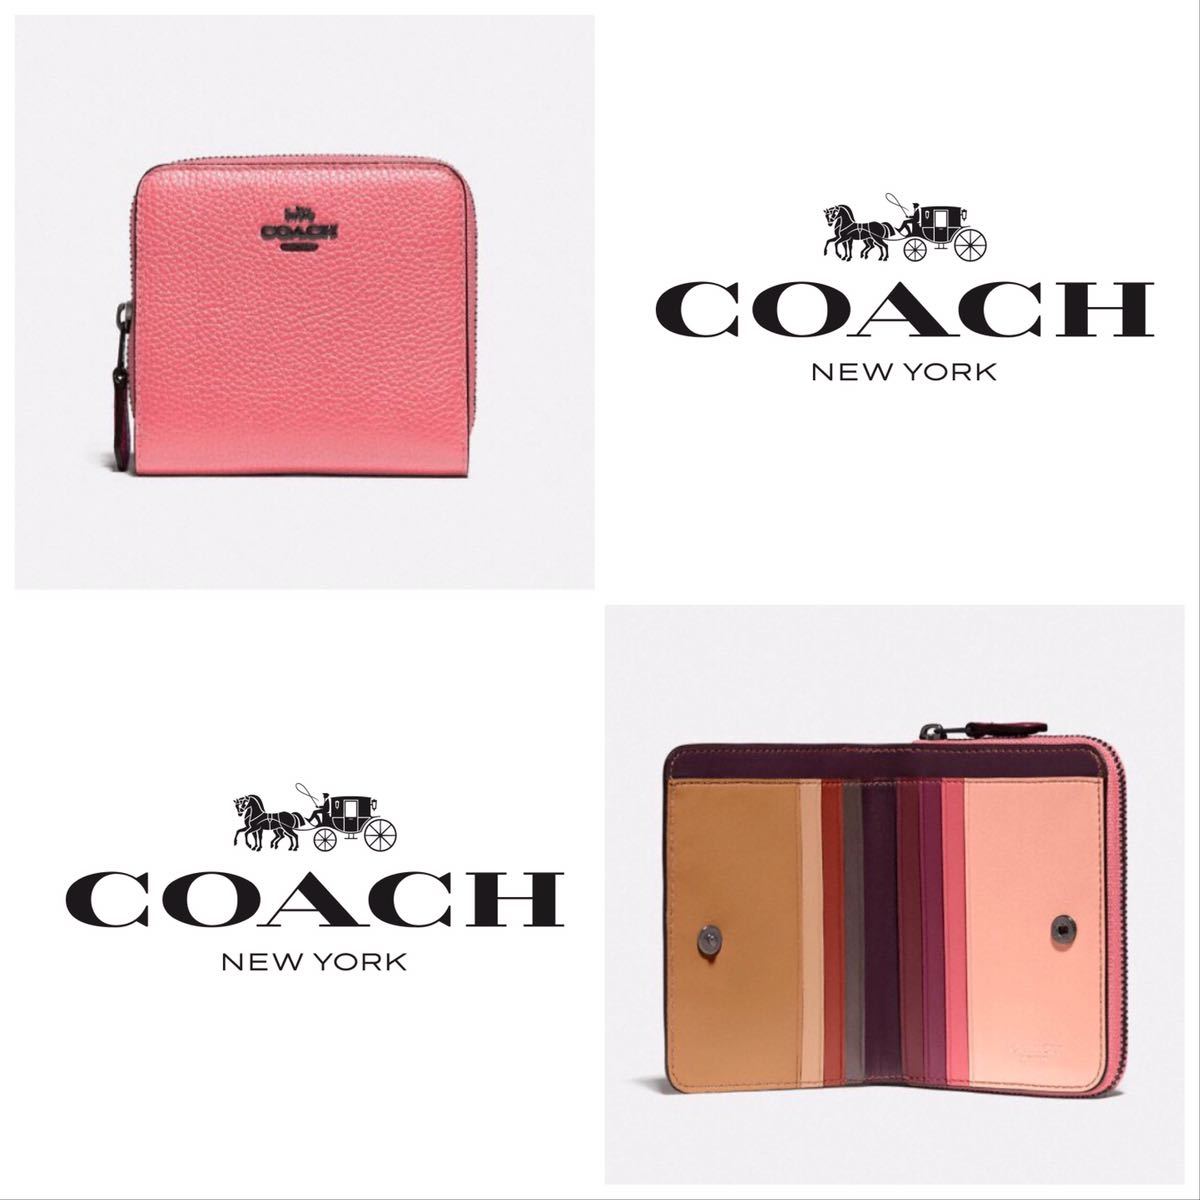 COACH 財布 ★大人気★ ビルフォールドウォレット カラーブロック ピンク 二つ折り 新品